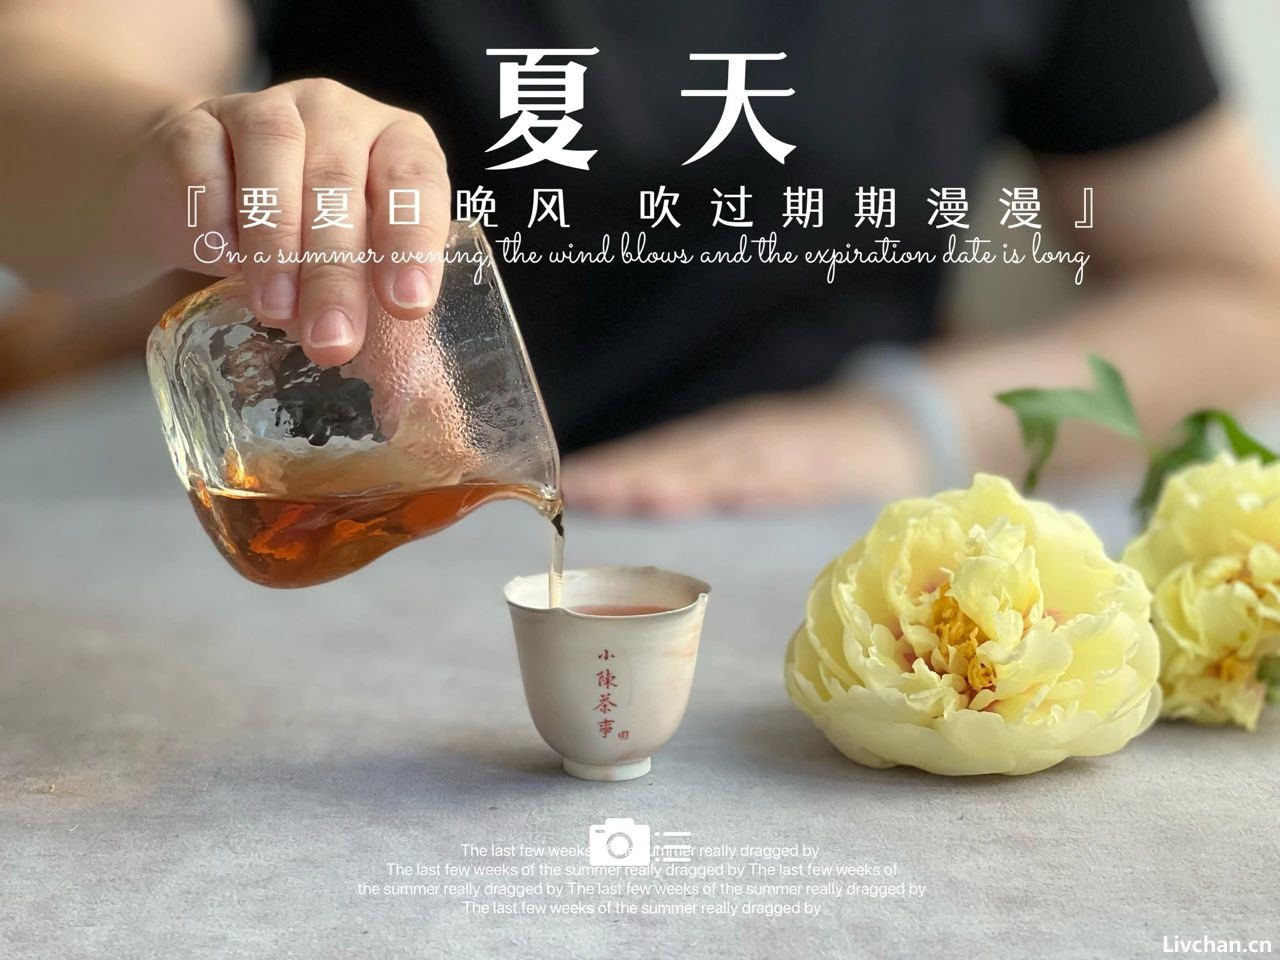 白茶的寿眉，乌龙茶的铁观音，再加工茶的茉莉花茶，都是低端茶？